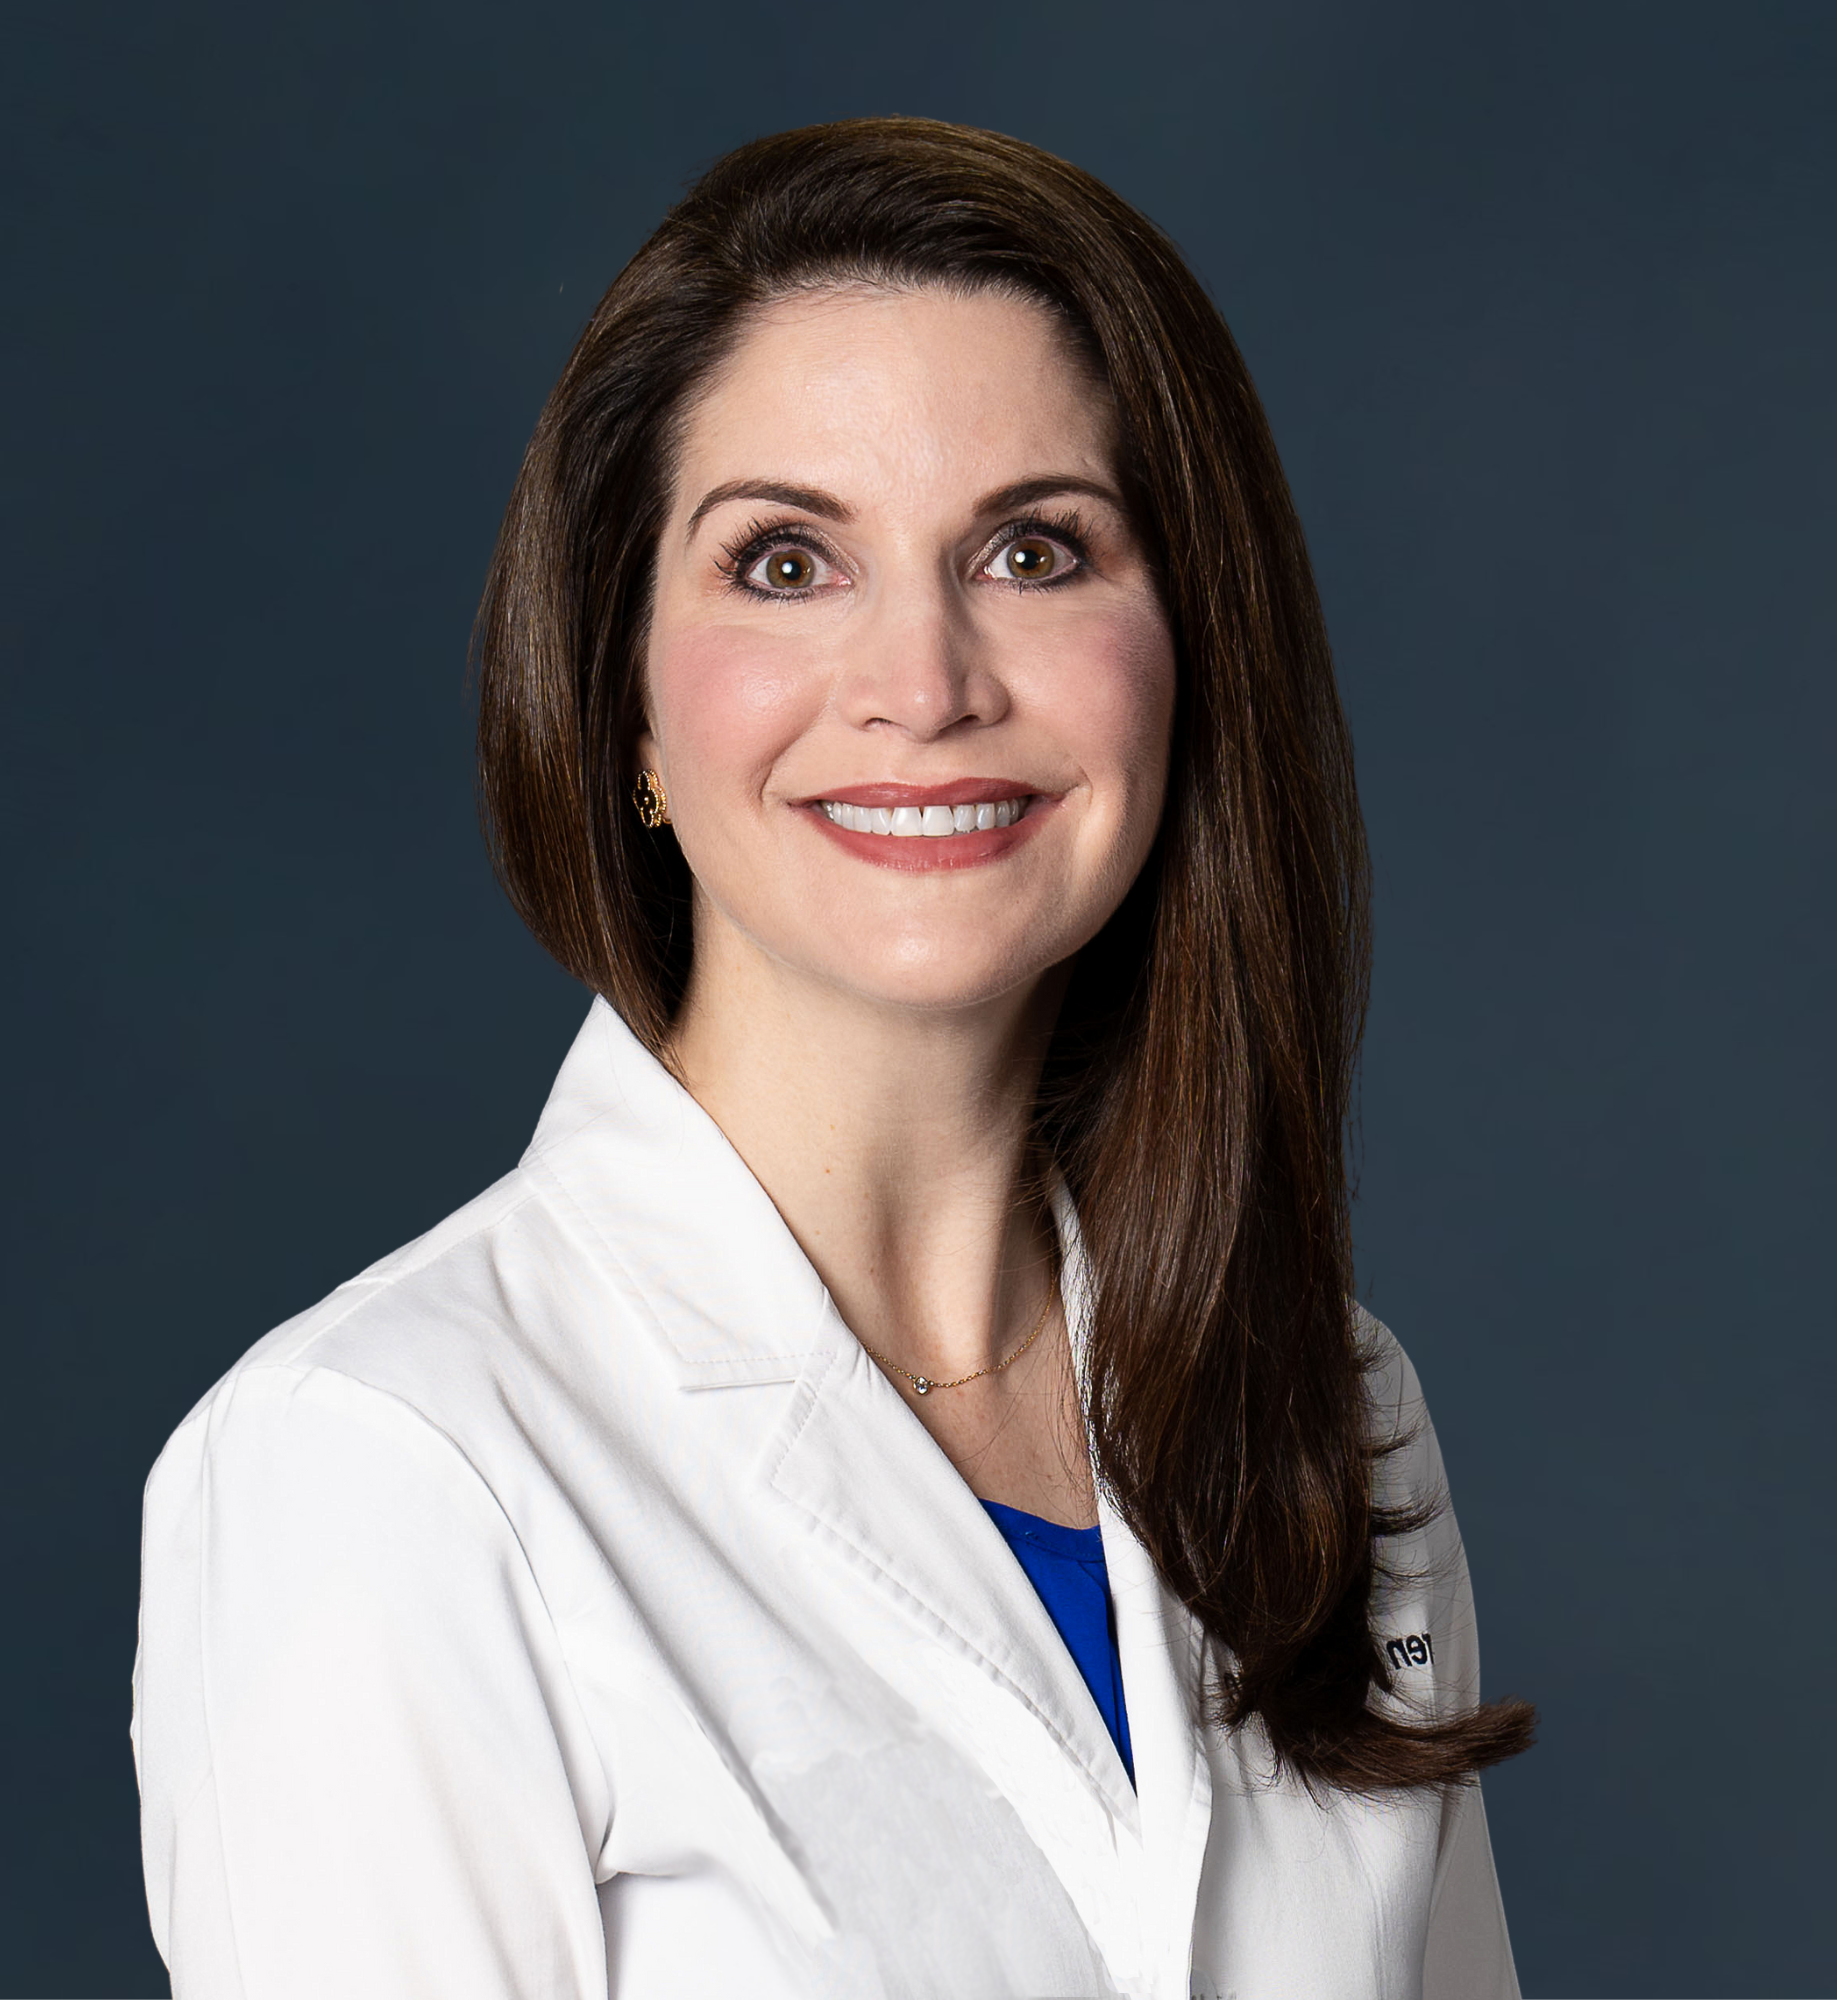 Dr. Lauren Ploch